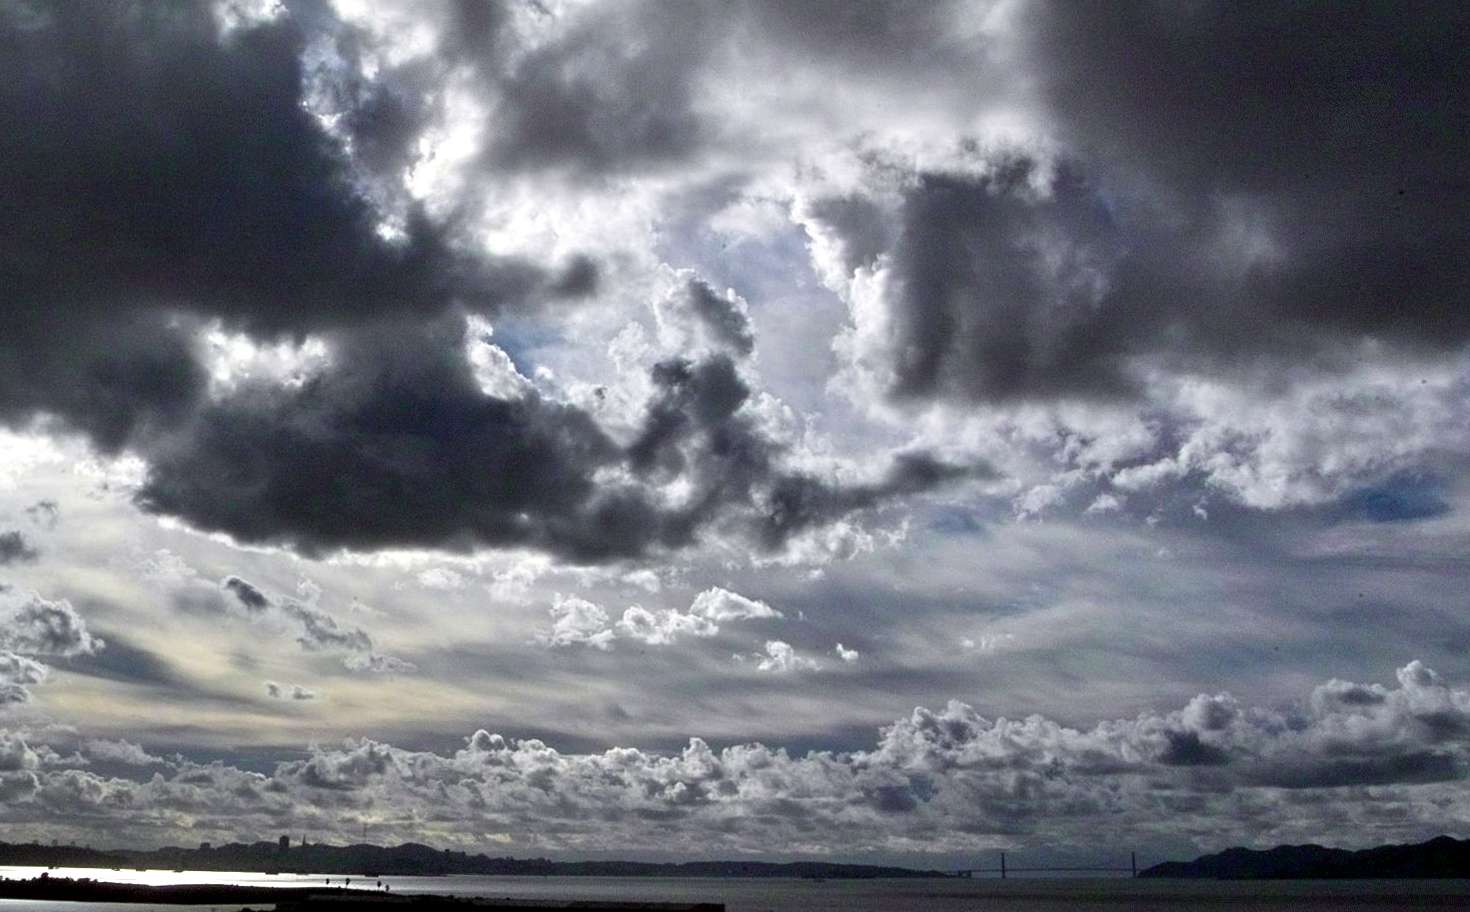 Meteo Caltanissetta: oggi martedì 19 Settembre nuvoloso per velature.